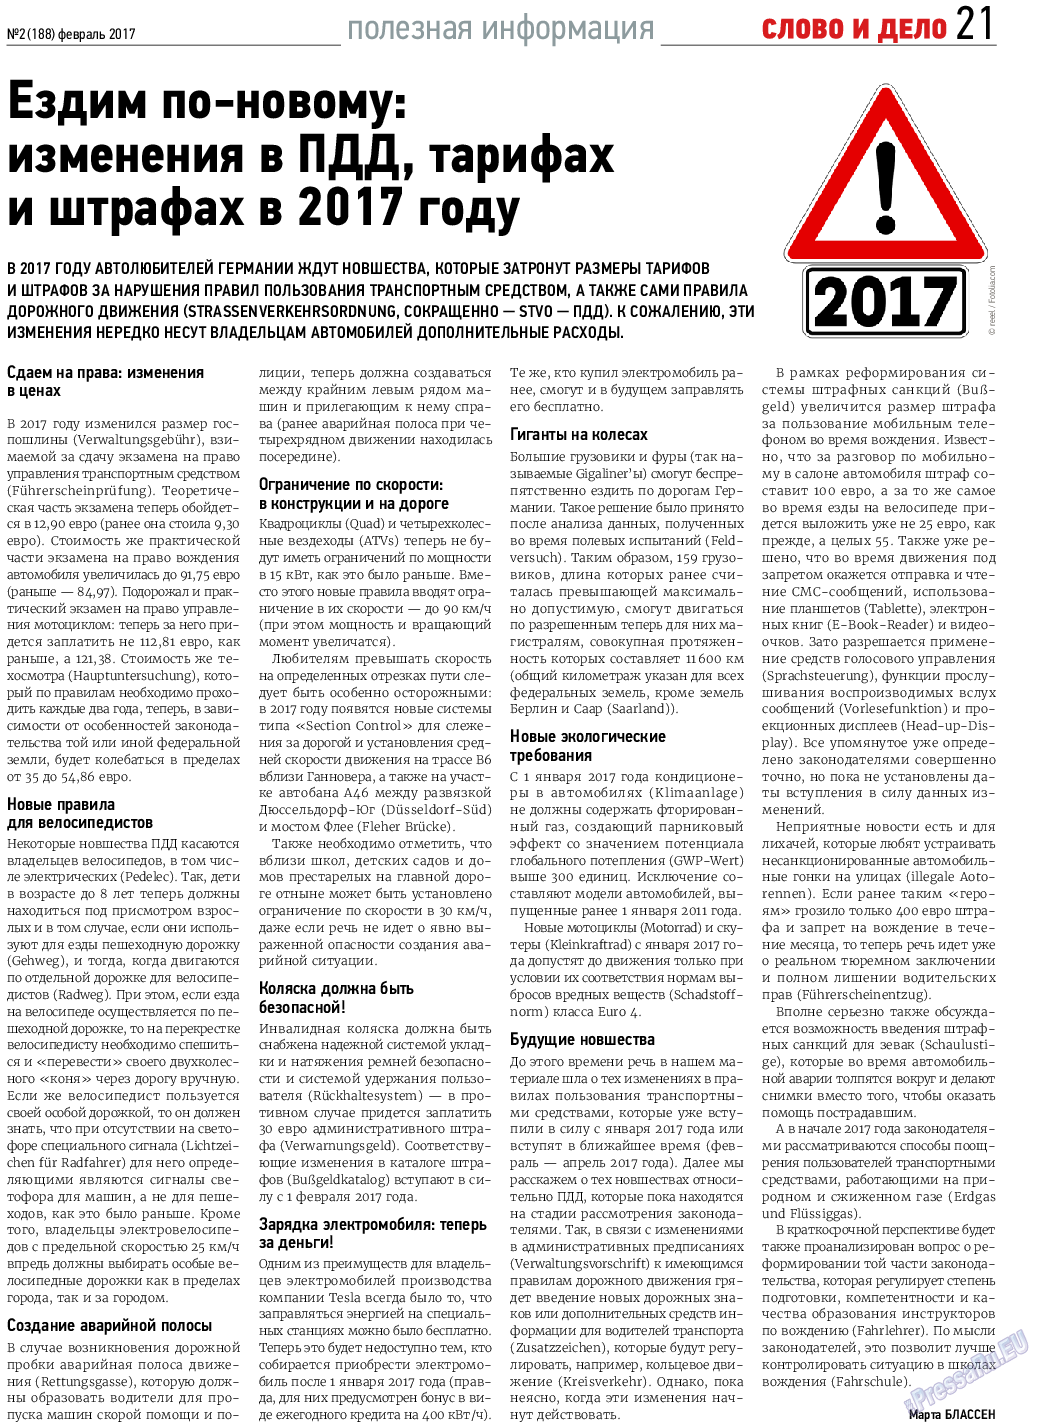 Слово и дело, газета. 2017 №2 стр.21